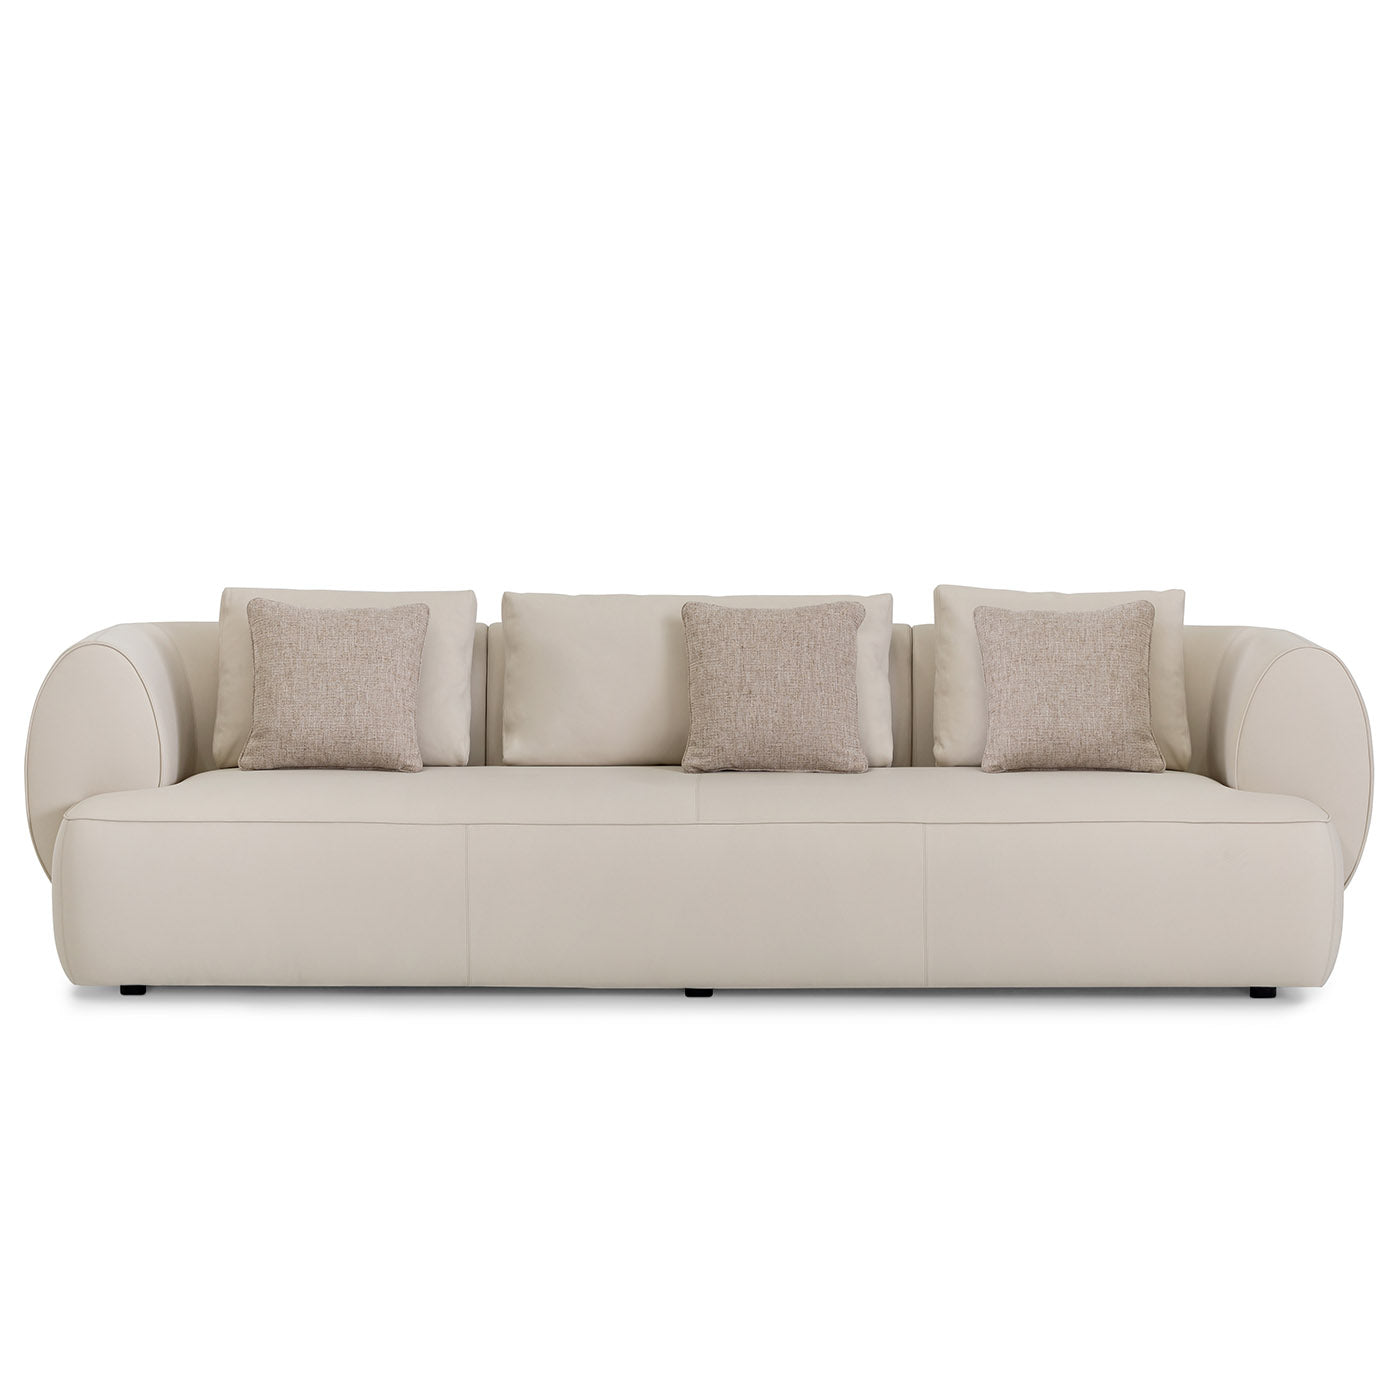 Botero 4-Seat Sofa - Alternative view 3